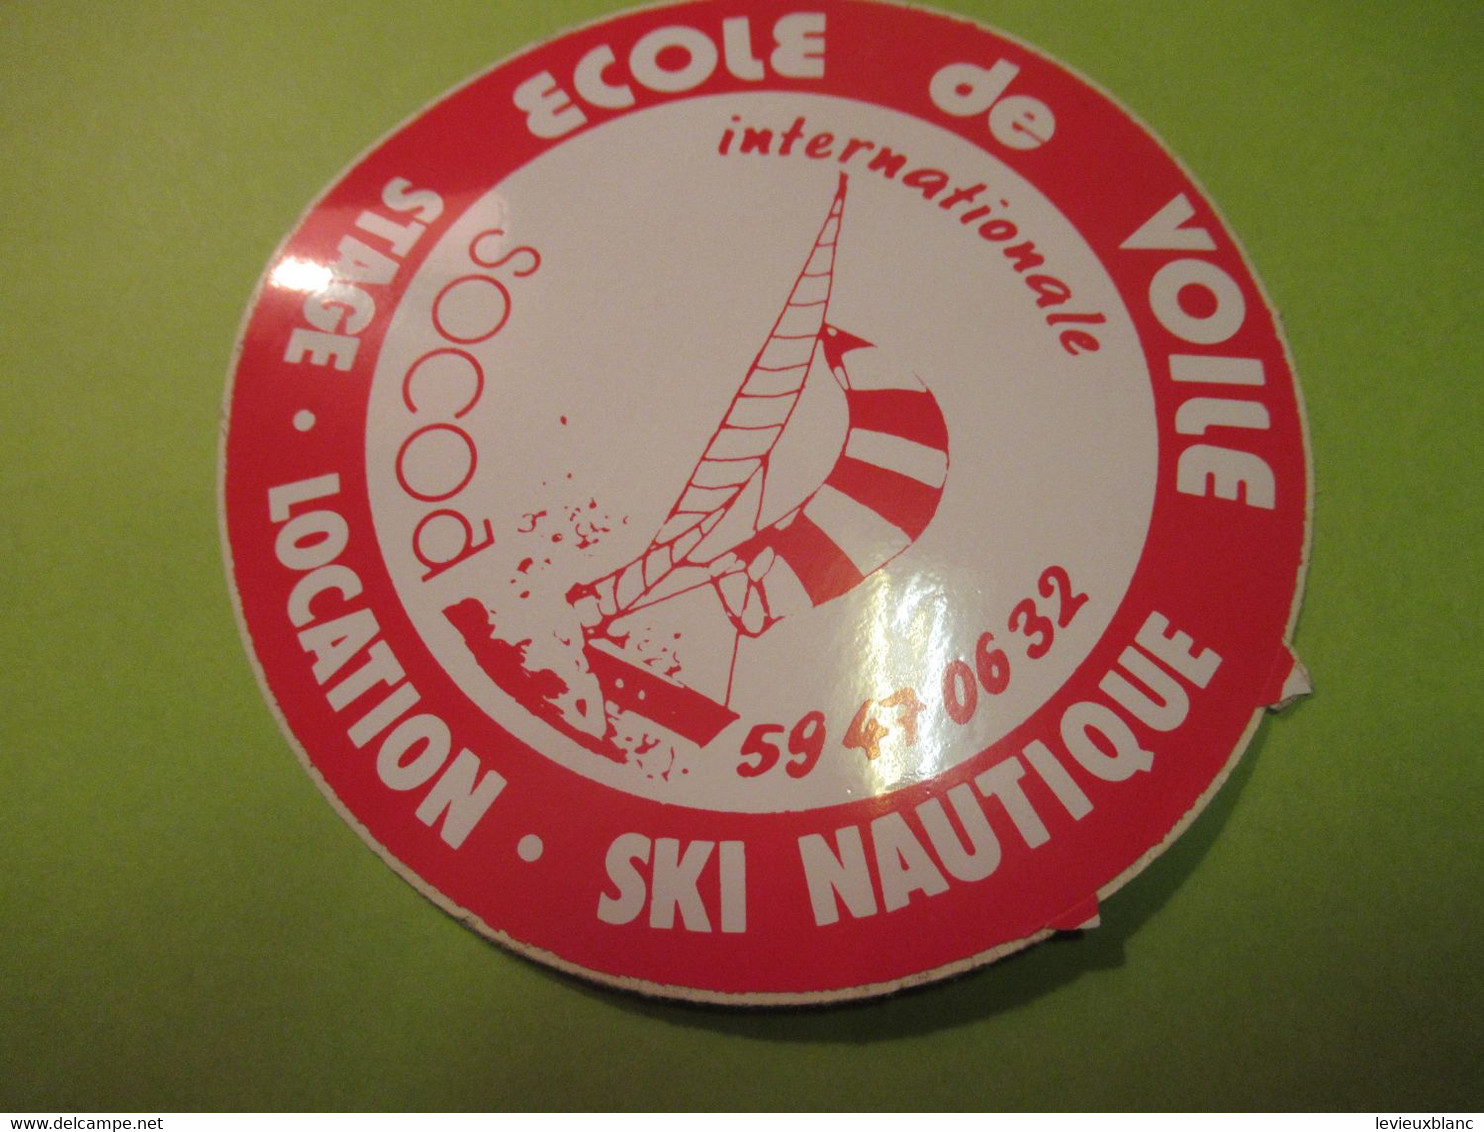 SPORT/ECOLE De VOILE Internationale/ Stage Location Ski Nautique/ MAC Line/ Vers 1970-1980     ACOL187 - Autocollants